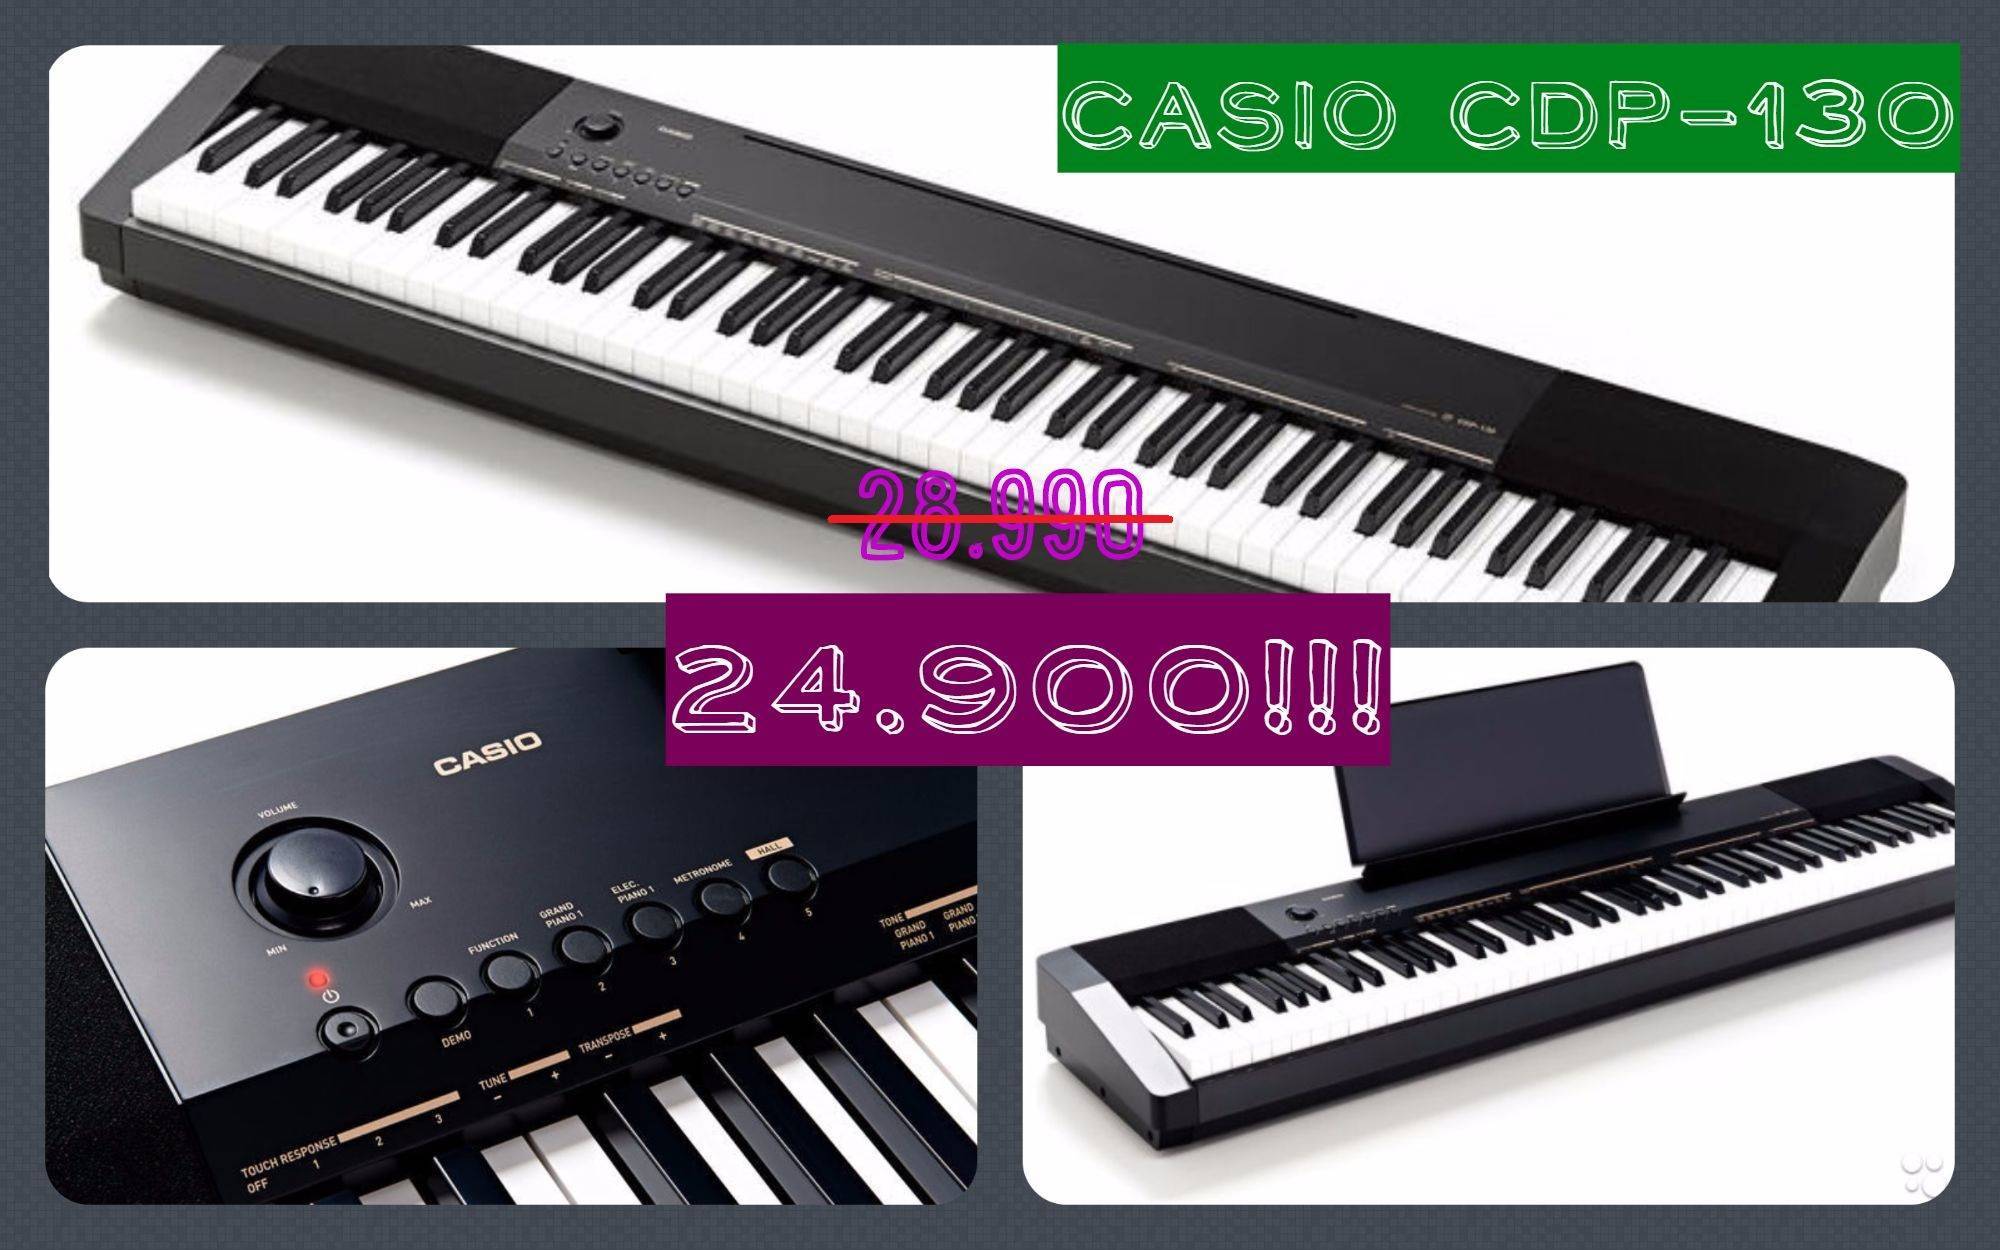 Акция! Цифровое пианино Casio CDP-130 всего за 24900 рублей!